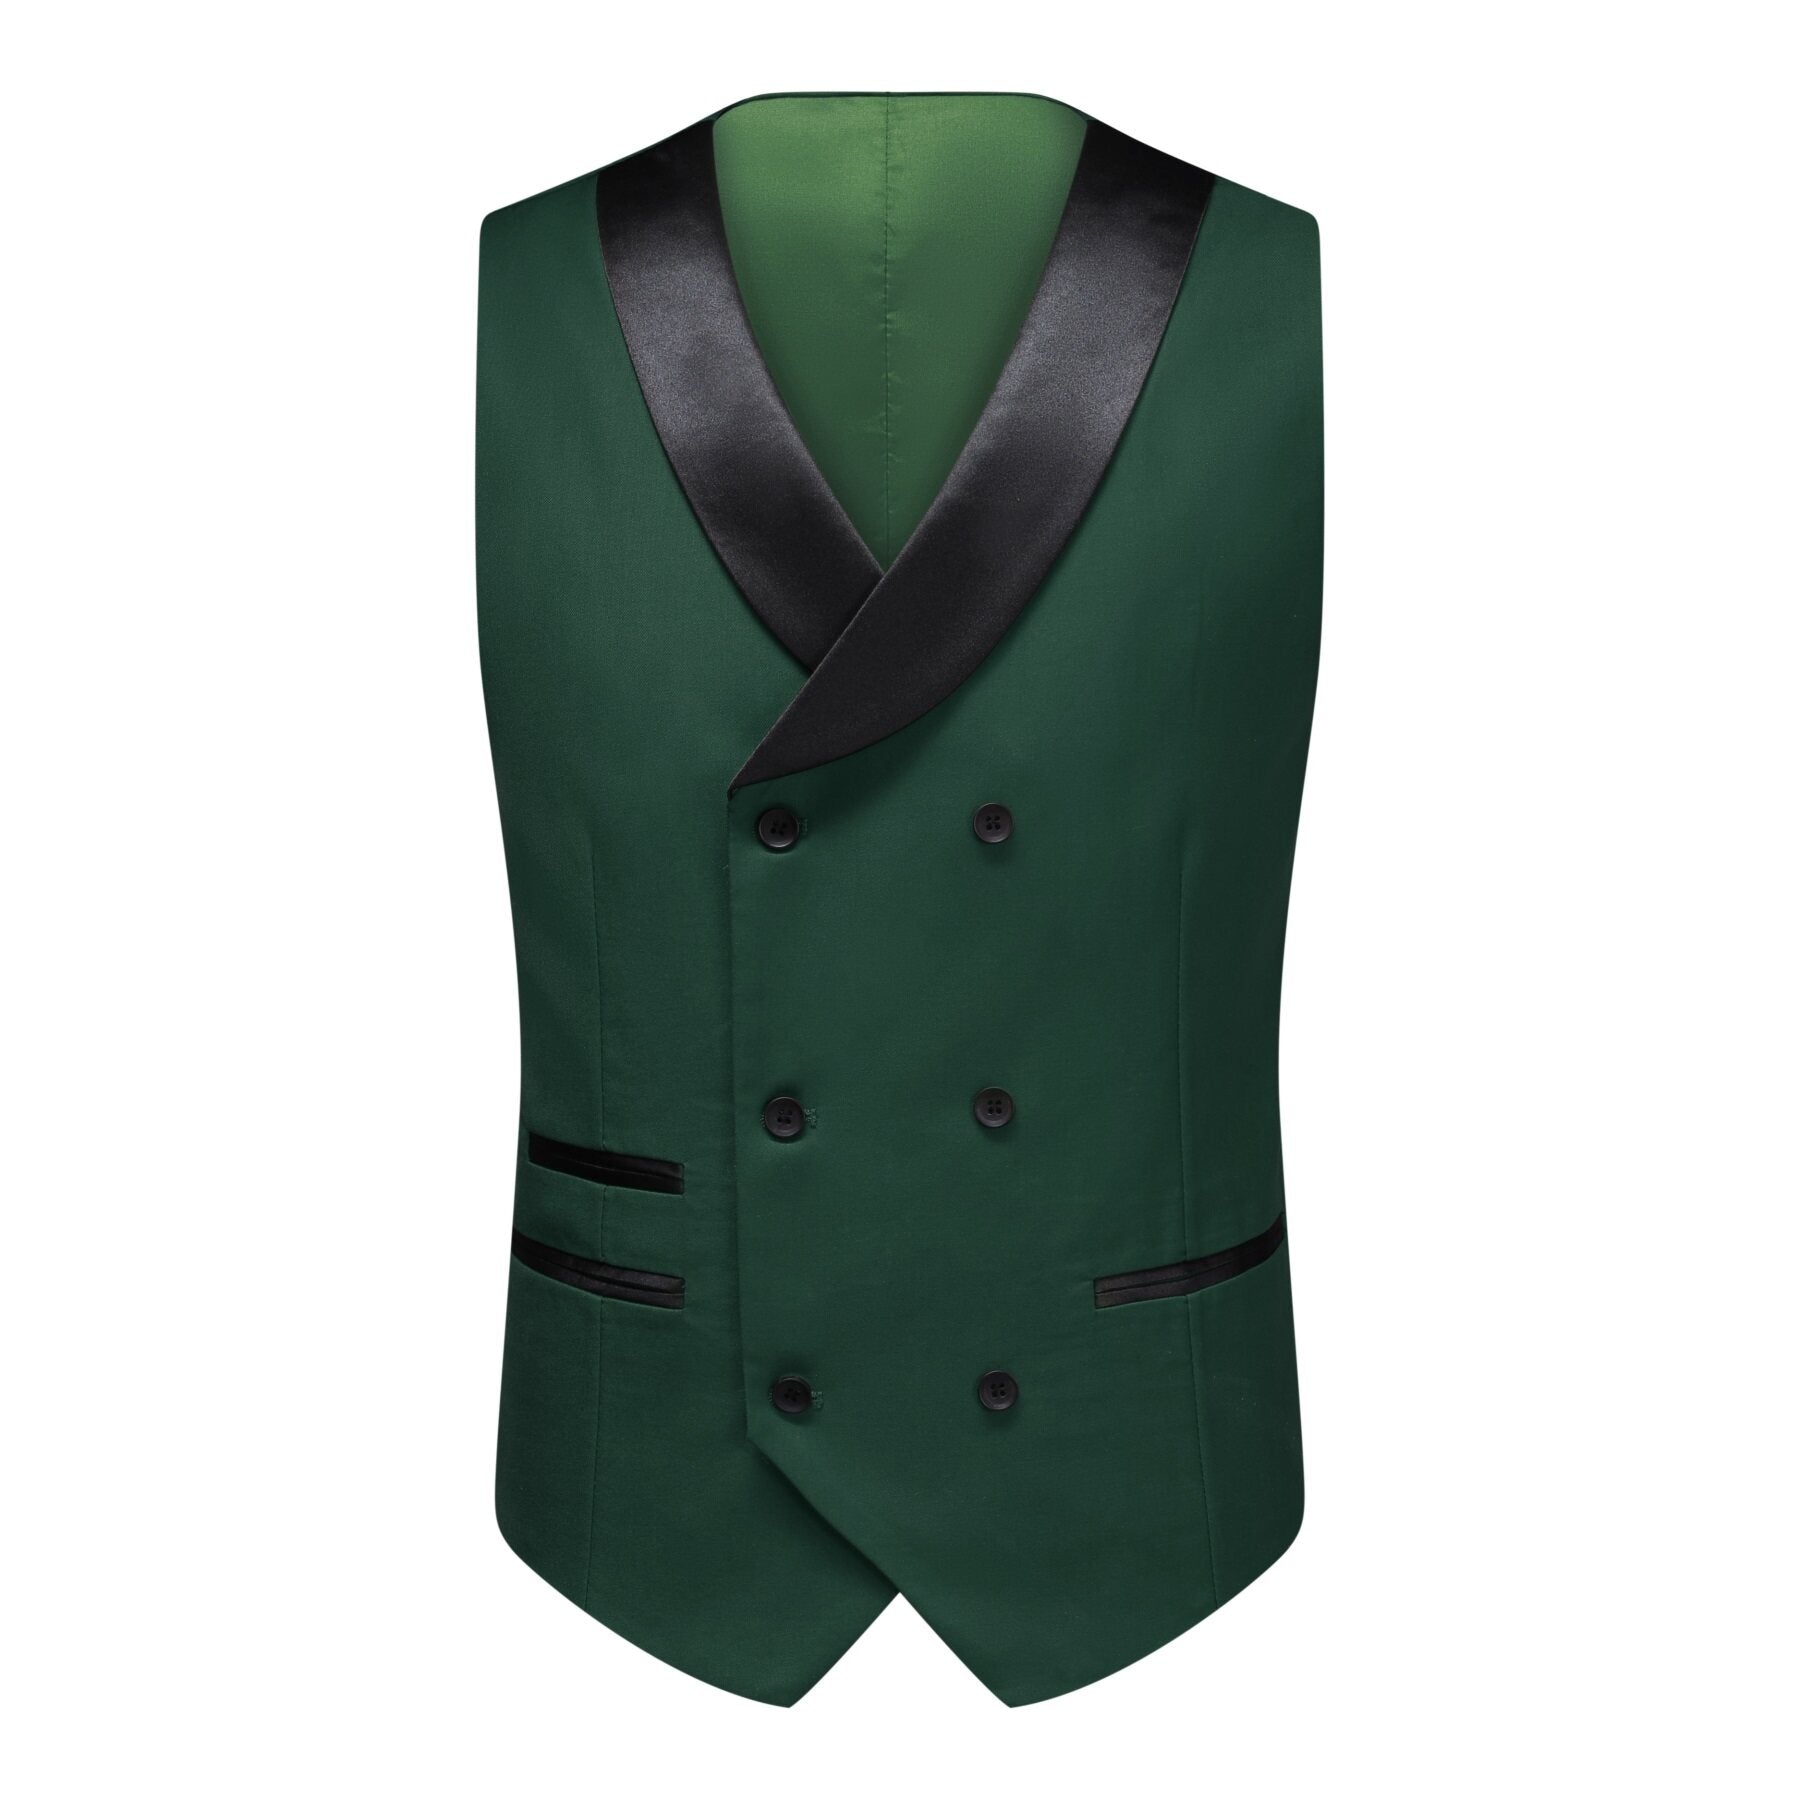 3-piece Men's Solid Color Notched Lapel Back Center Vent Suit Green